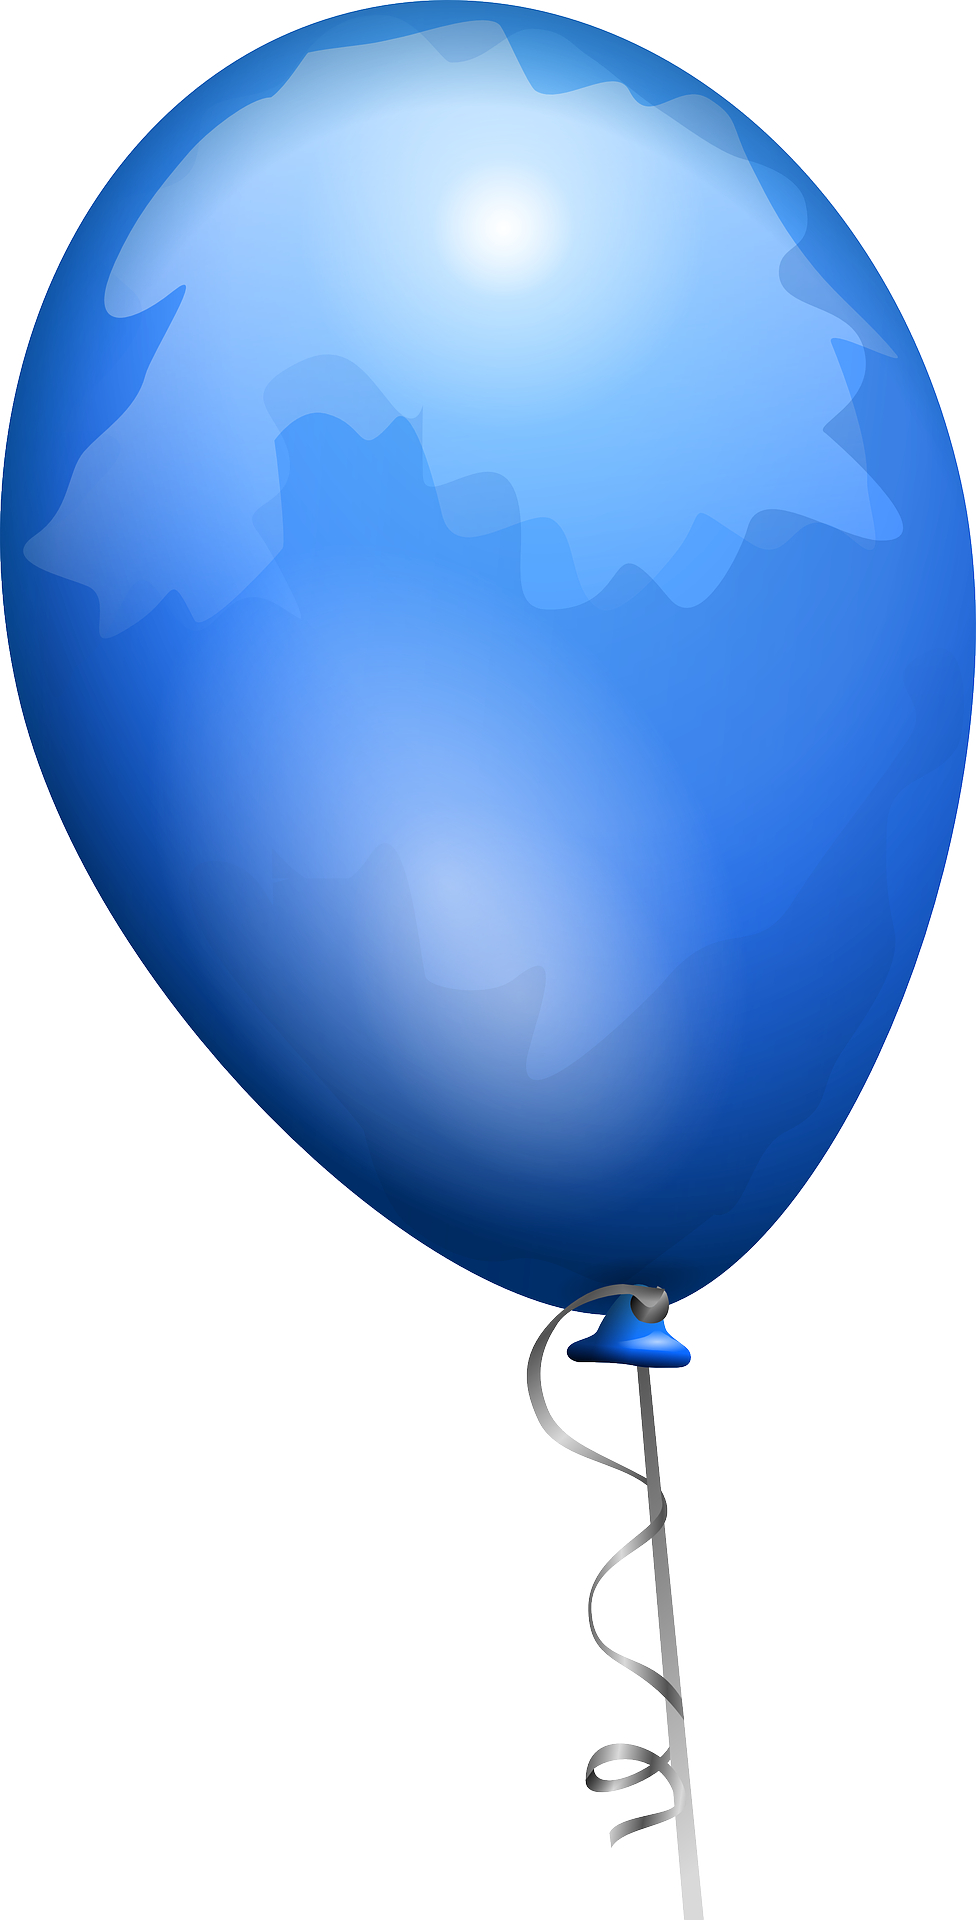 Blue balloon vector